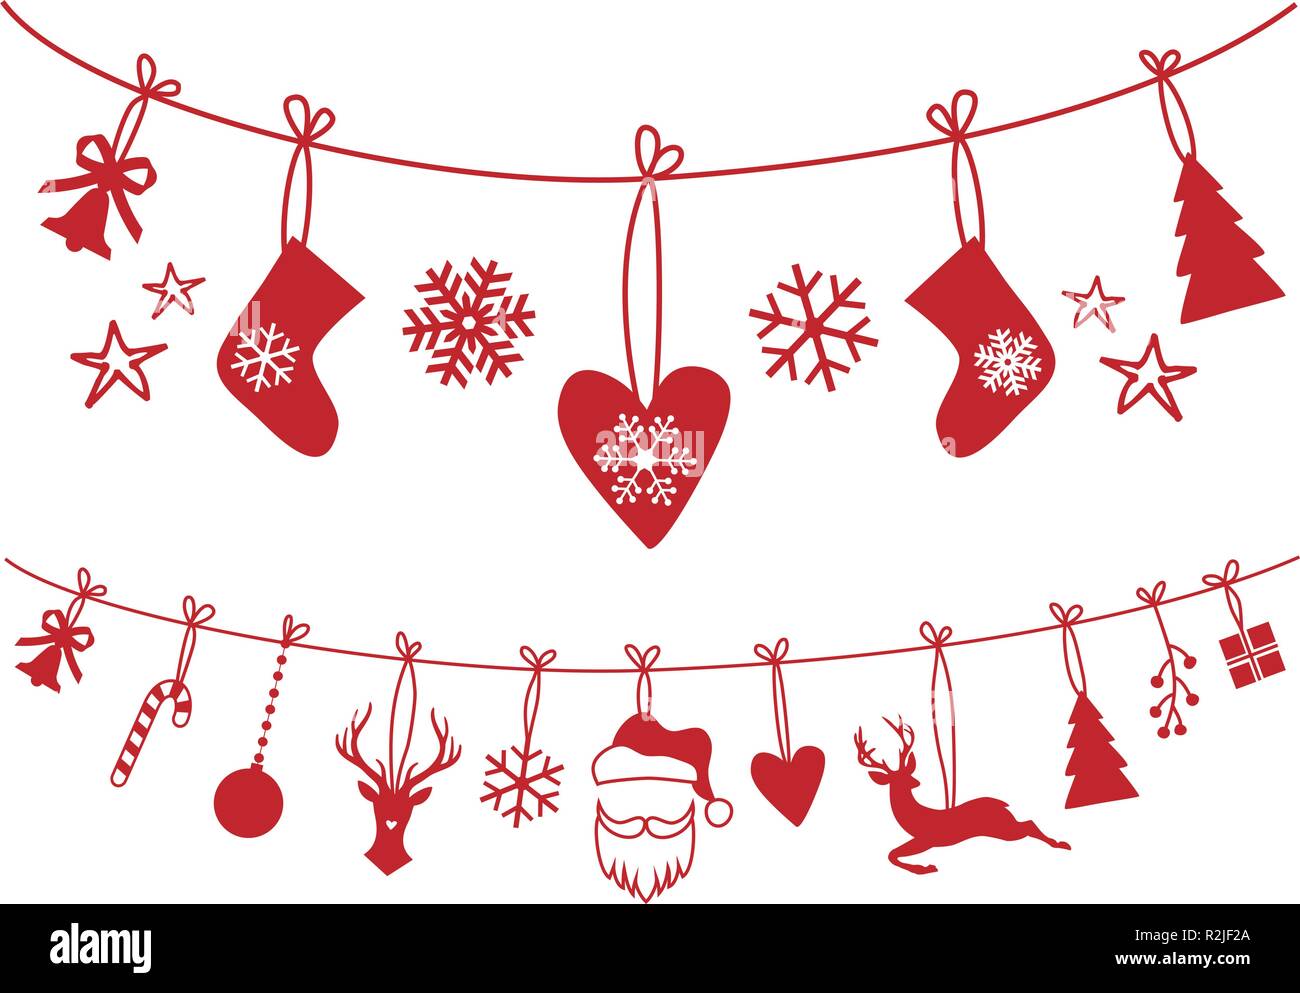 Weihnachtsstrumpf, Wäscheleine mit Santa Claus, Socken, Baum, Rentiere, Schneeflocken, vektor design elemente für Weihnachten, Dekoration Stock Vektor